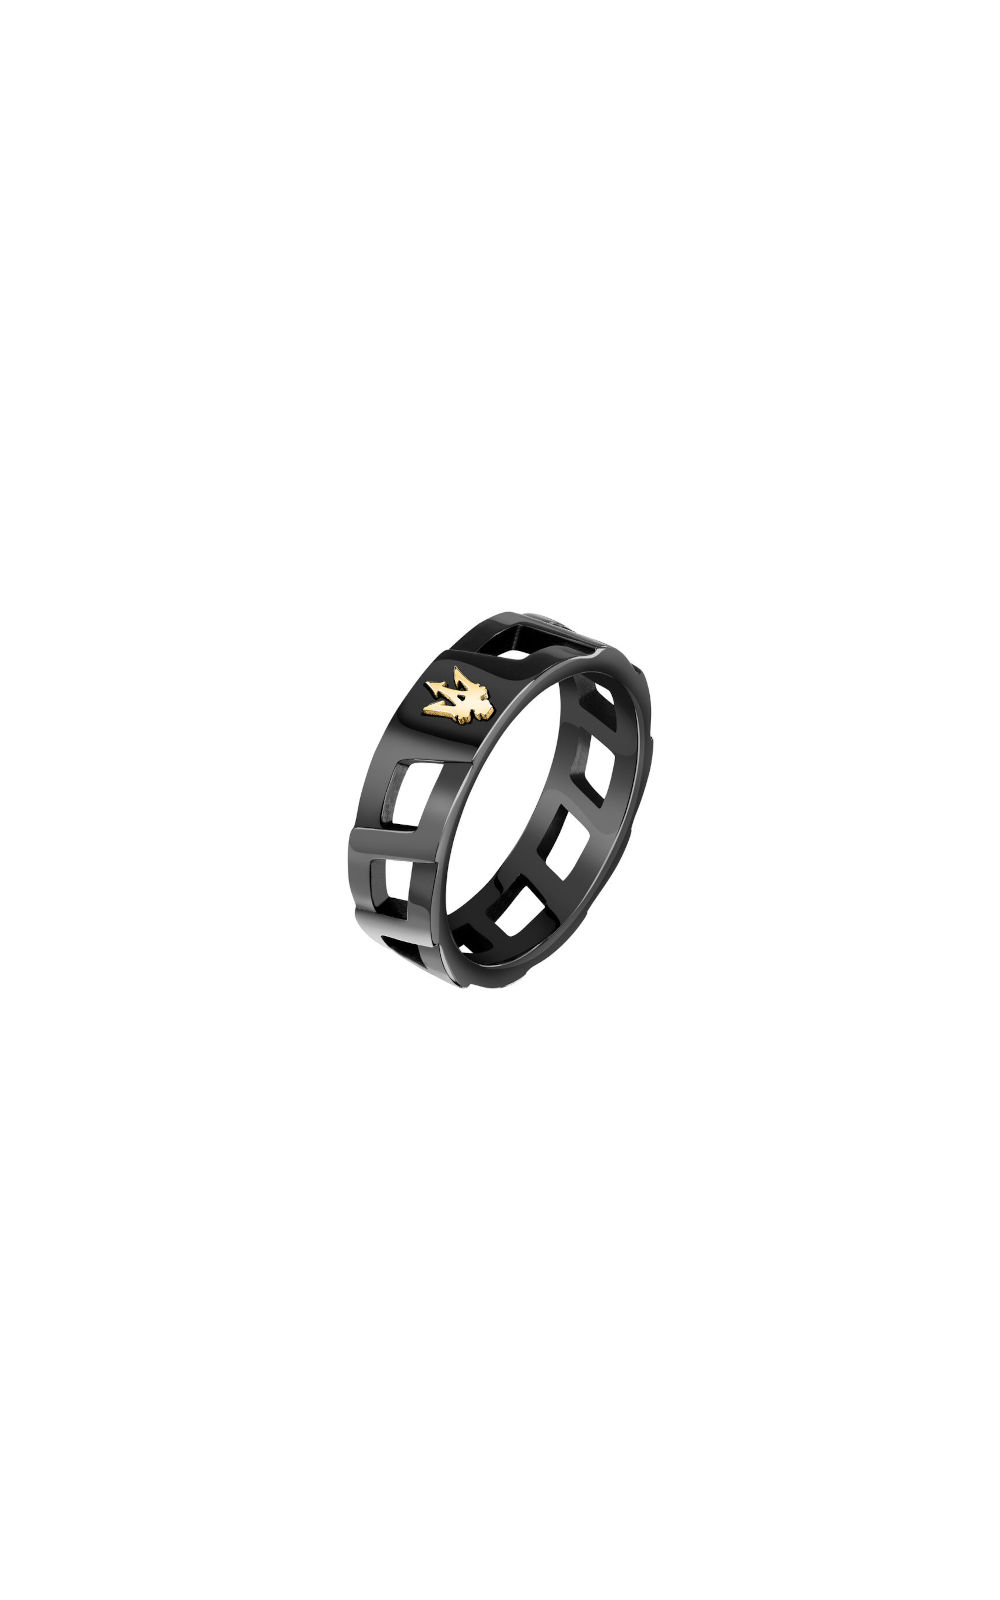 MASERATI RING JM334AVD510-No.27 Μαύρο Ανδρικό Δαχτυλίδι Με Χρυσή Τρίαινα